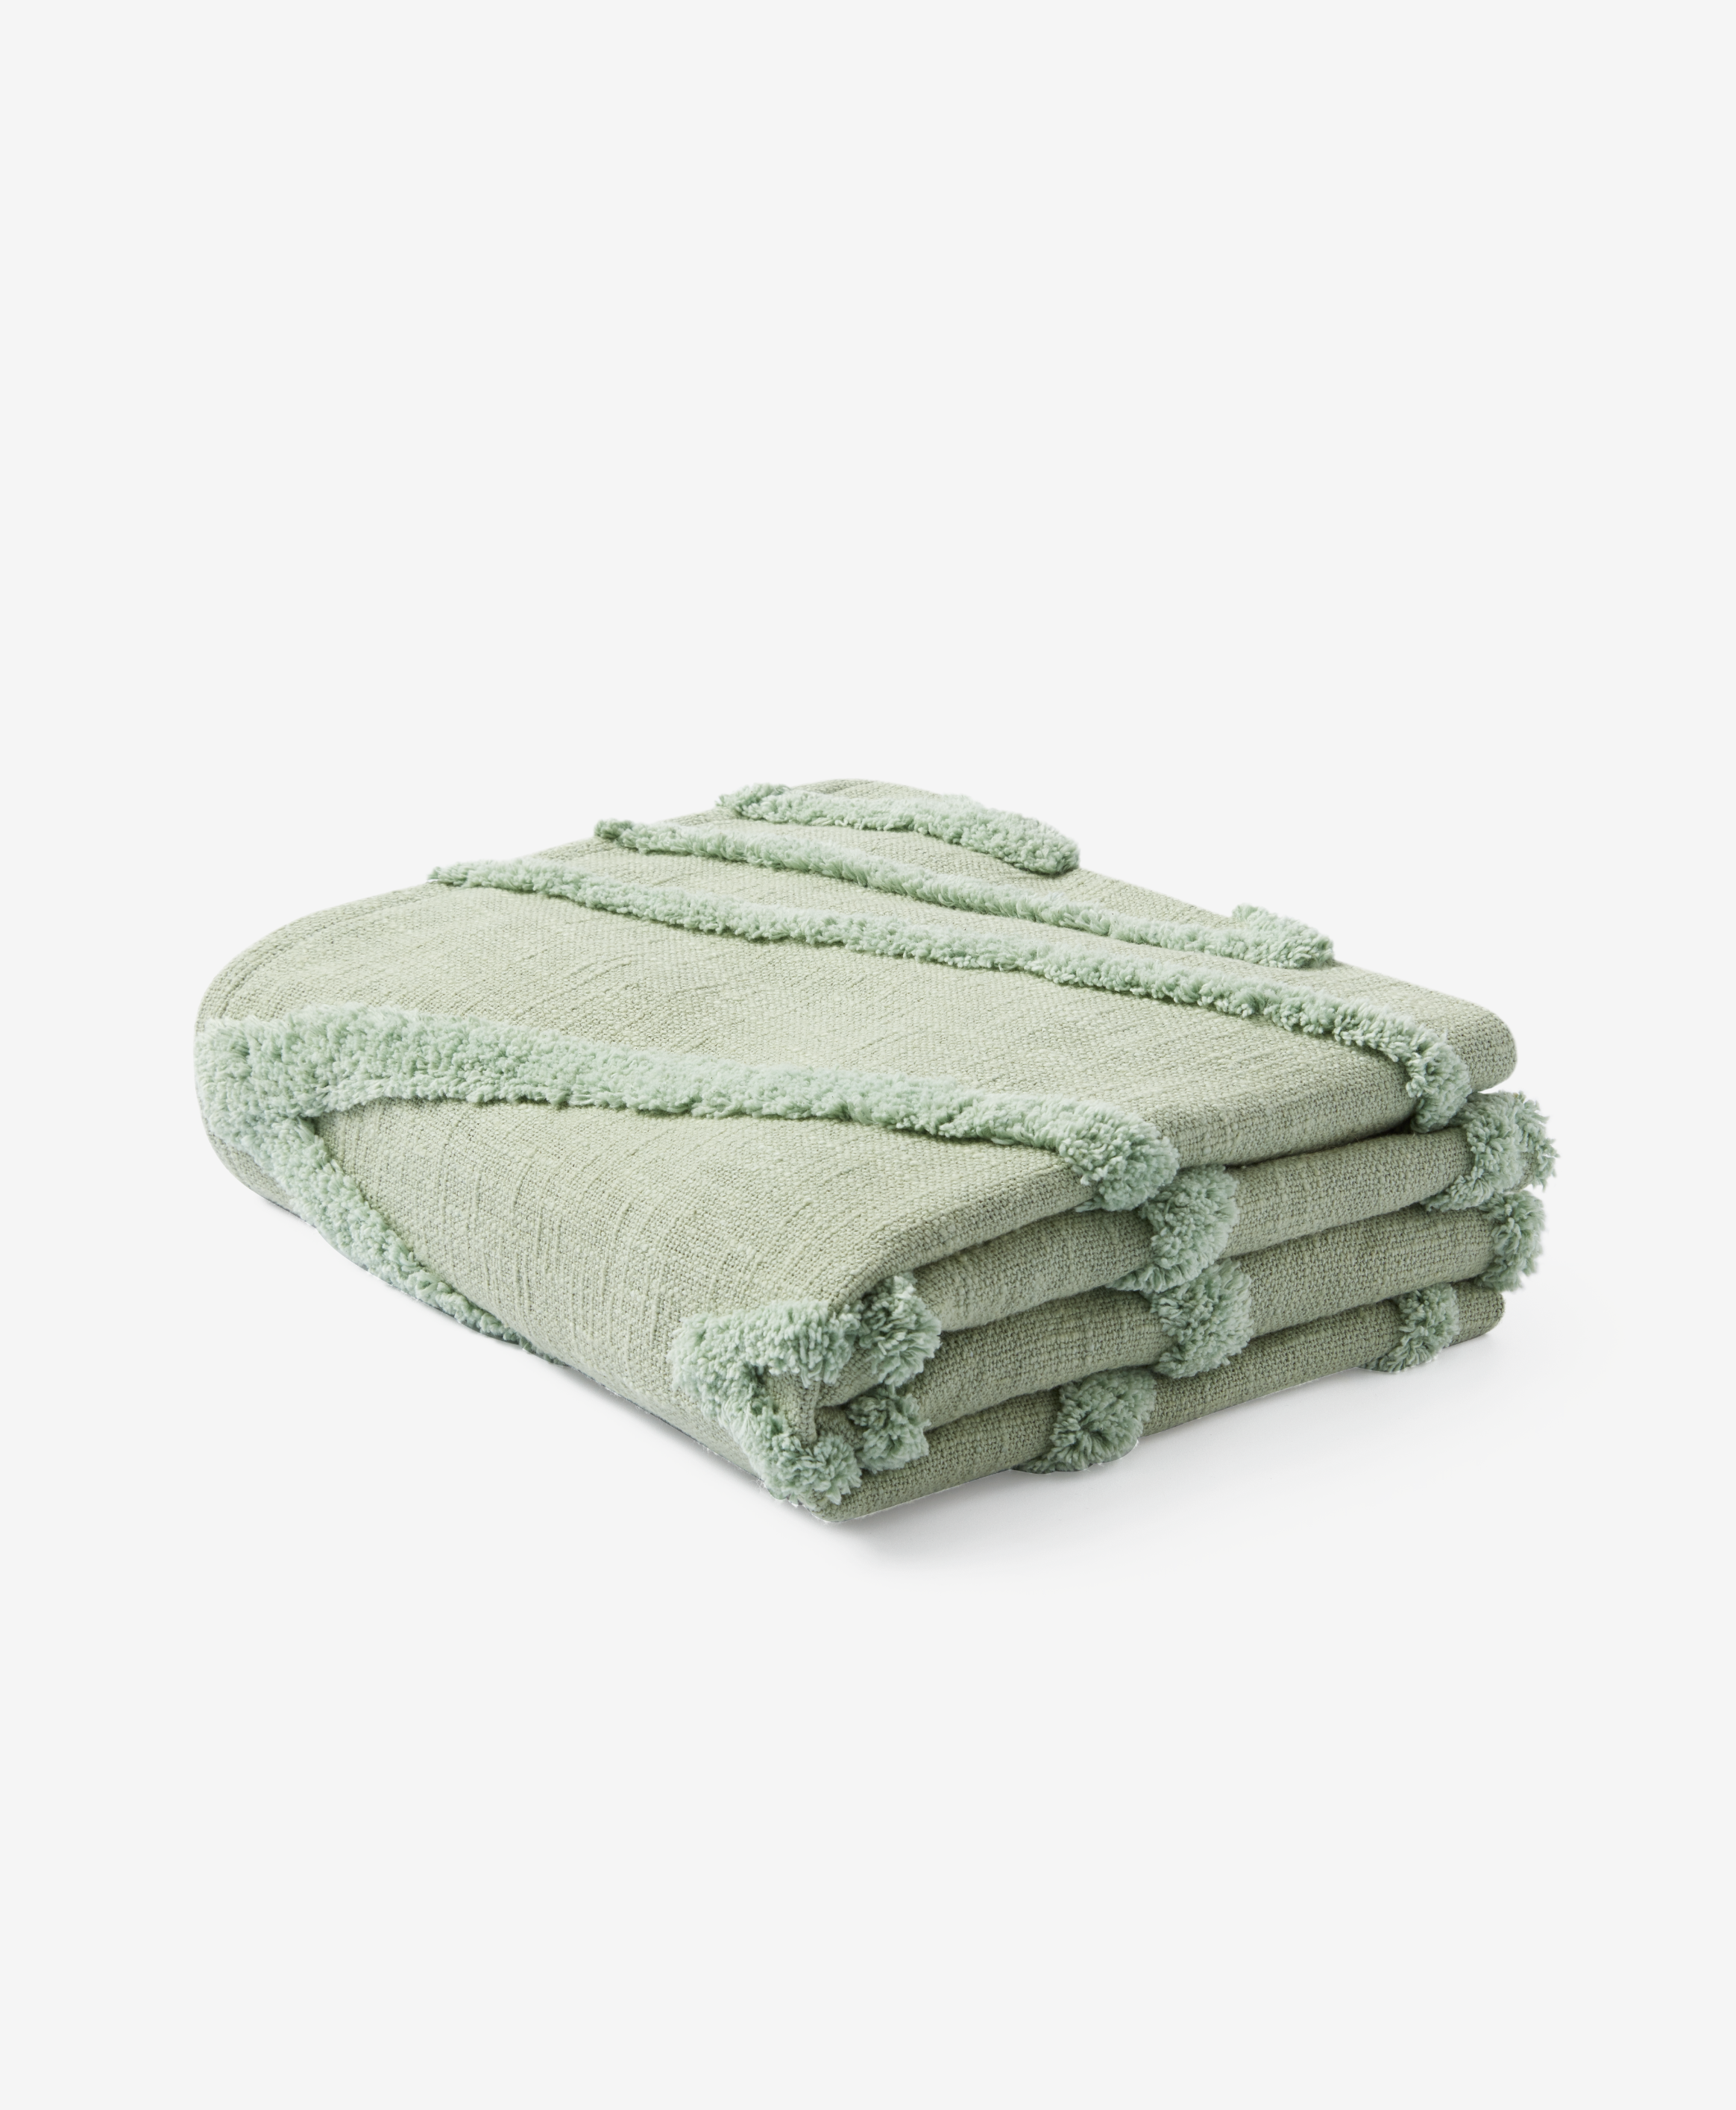 Decke aus 100% Baumwolle mit Prägemuster, grün, 130 x 160 cm